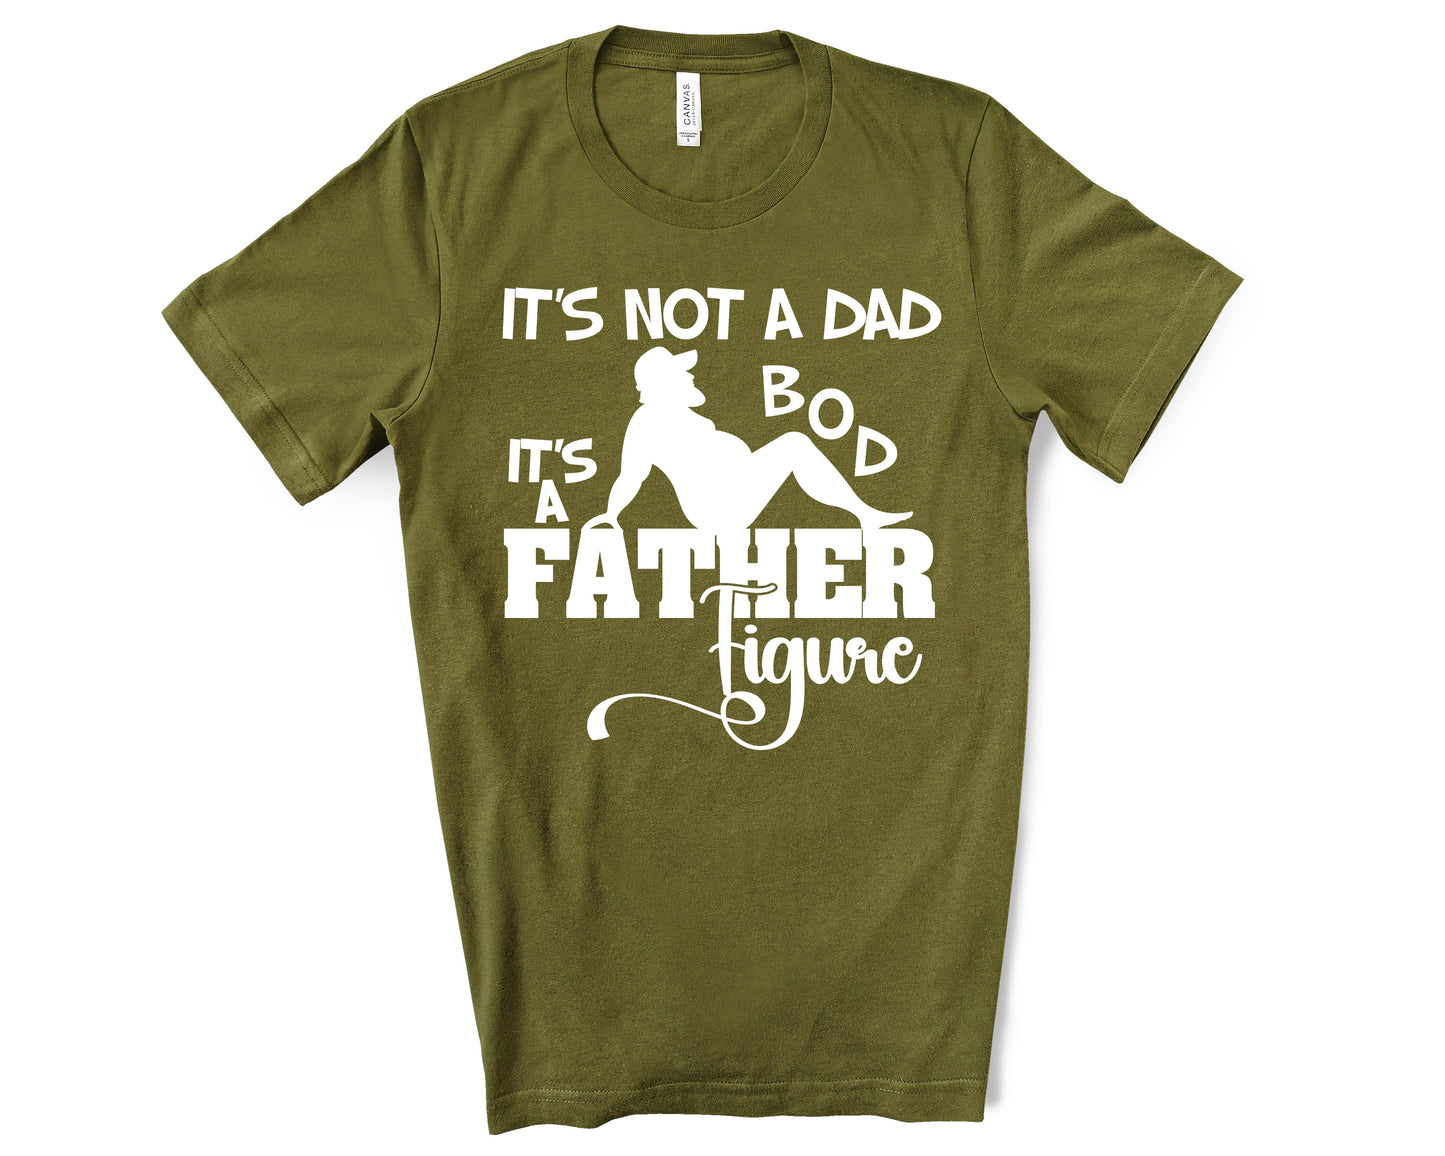 not a dad bod shirt